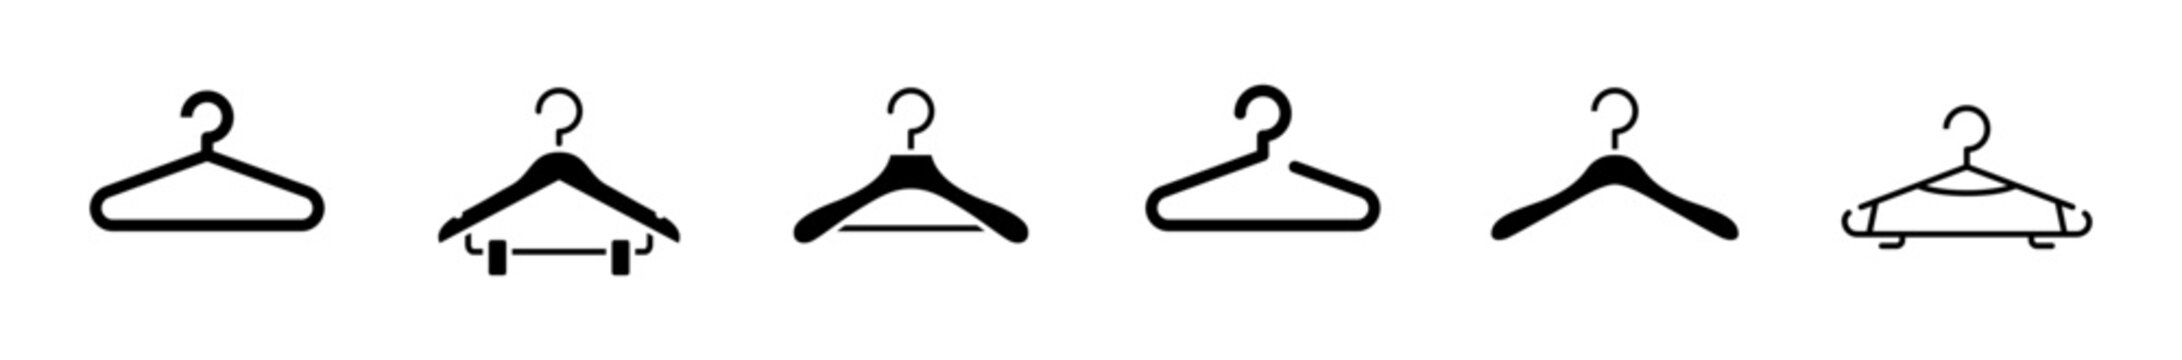 Set clothes hanger simple form symbol sign vector illustration.